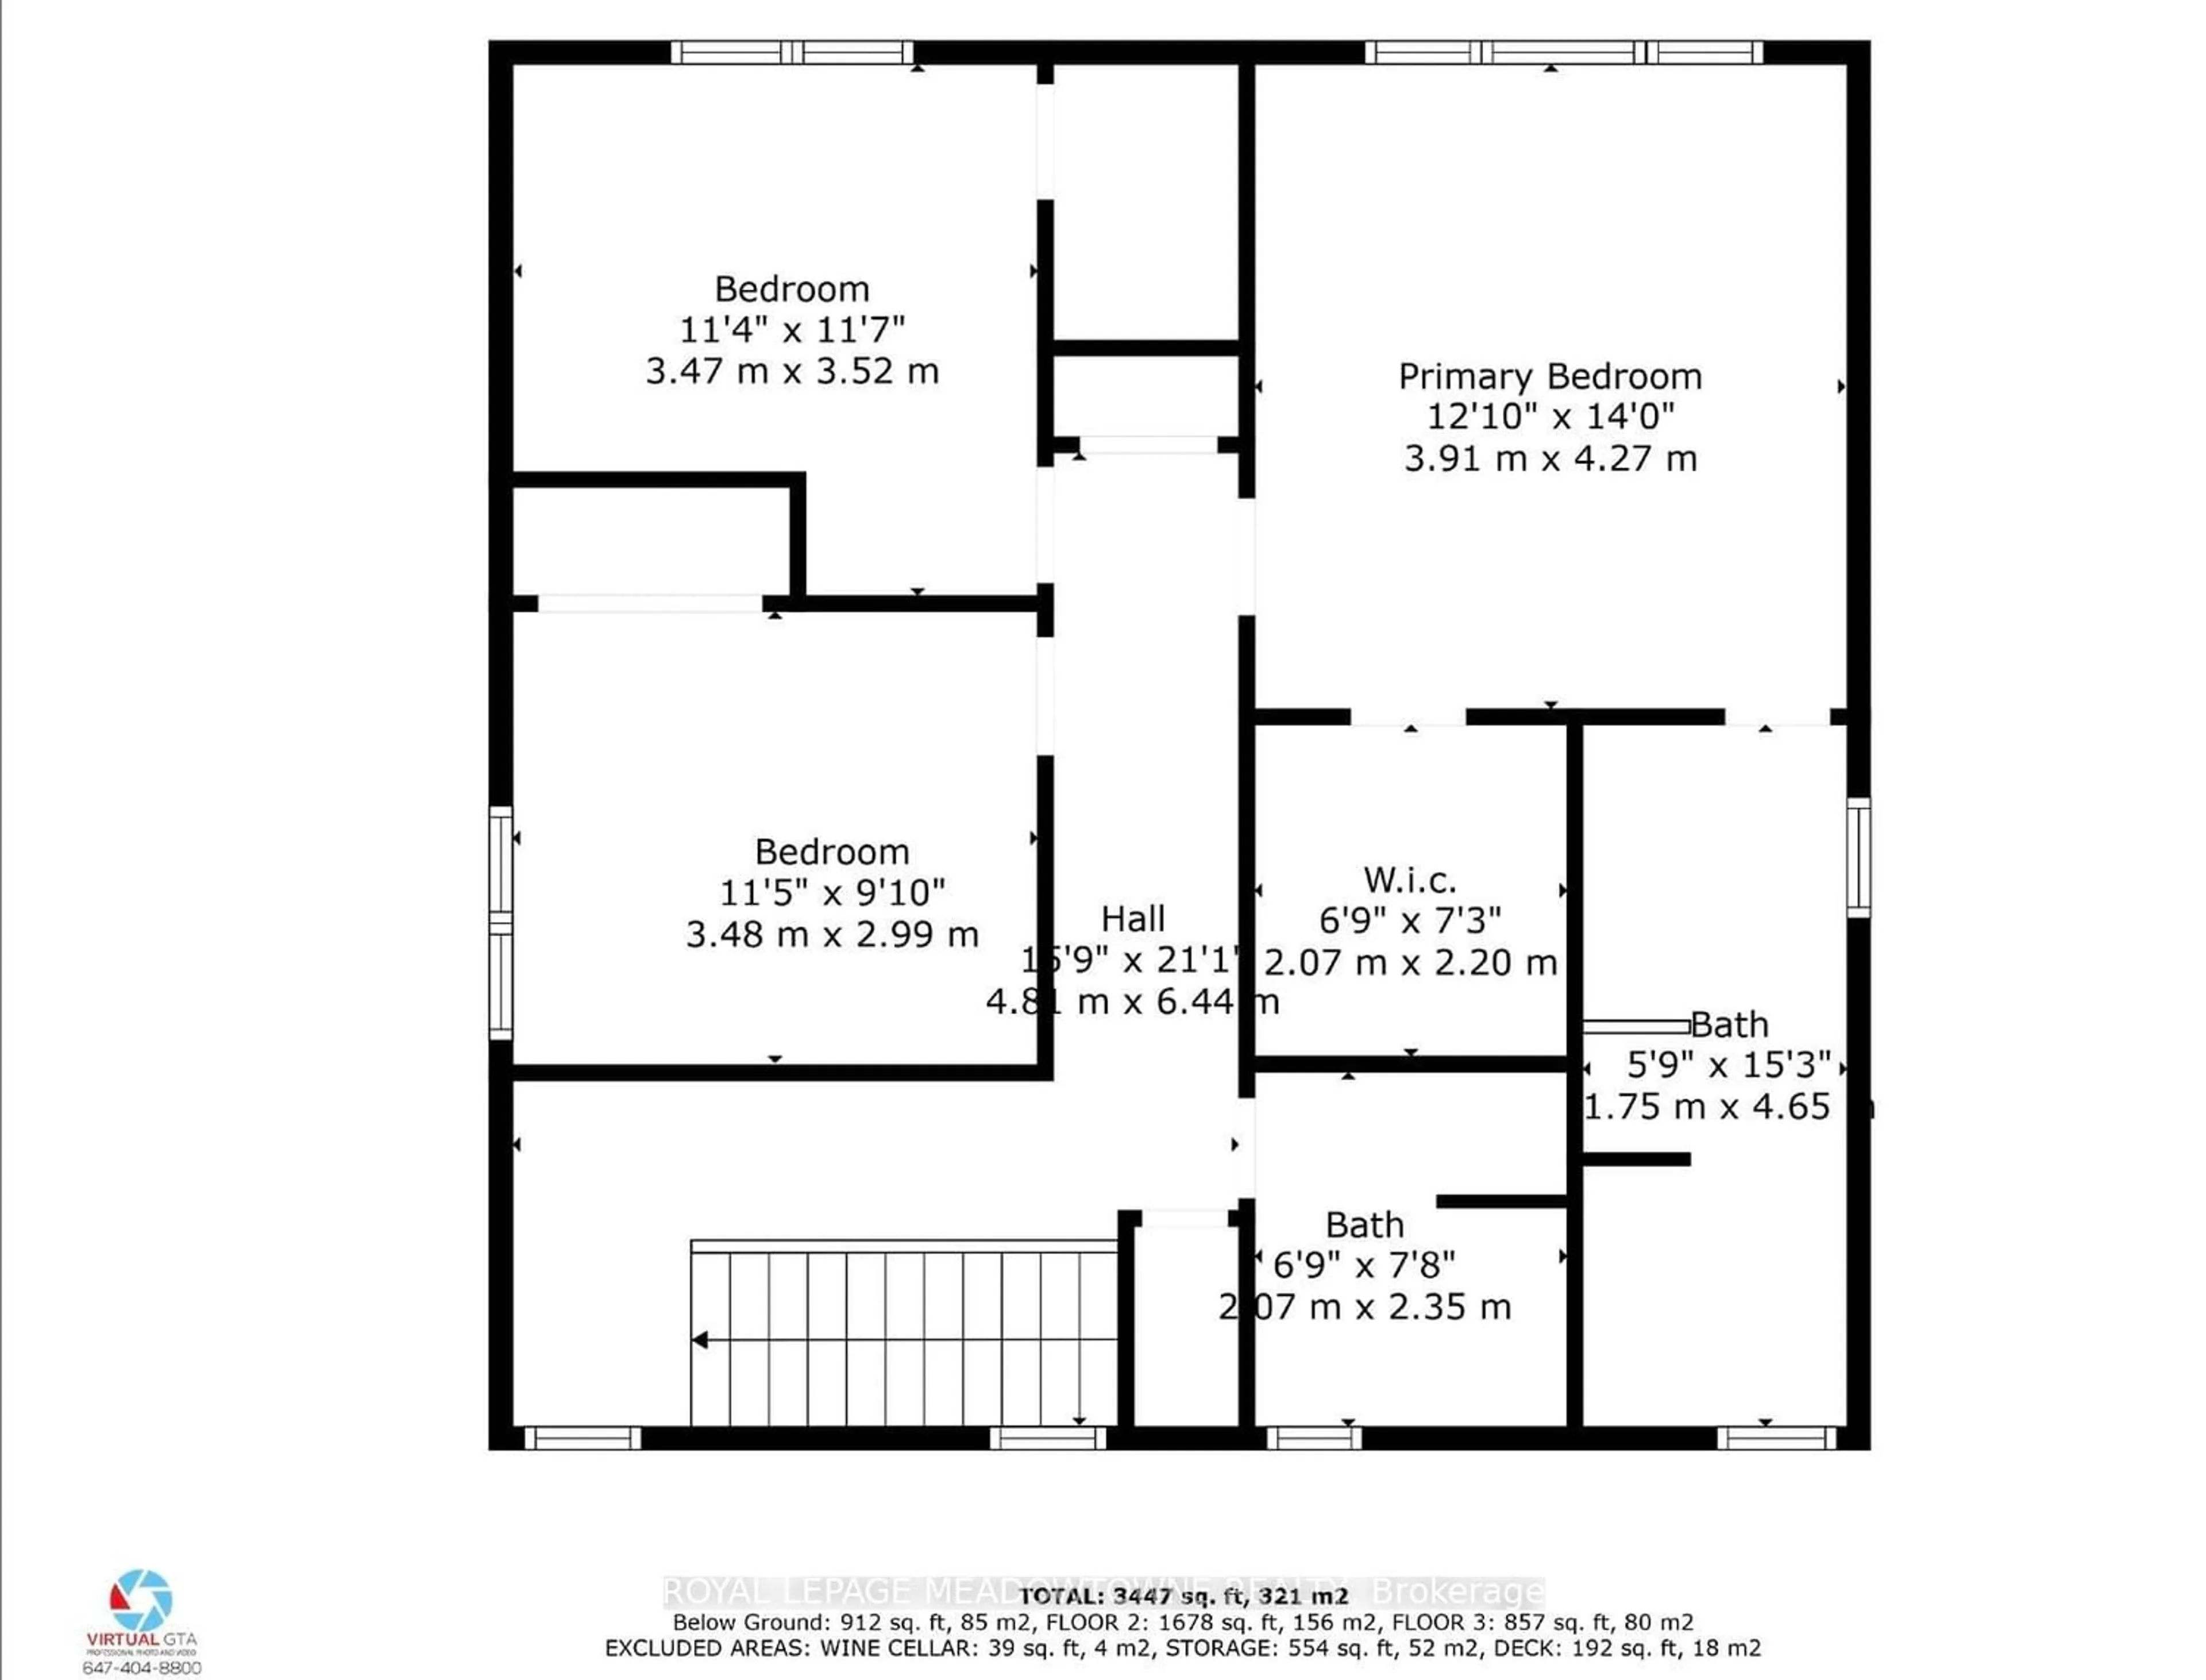 Floor plan for 15028 Rockside Rd, Caledon Ontario L7C 1V5